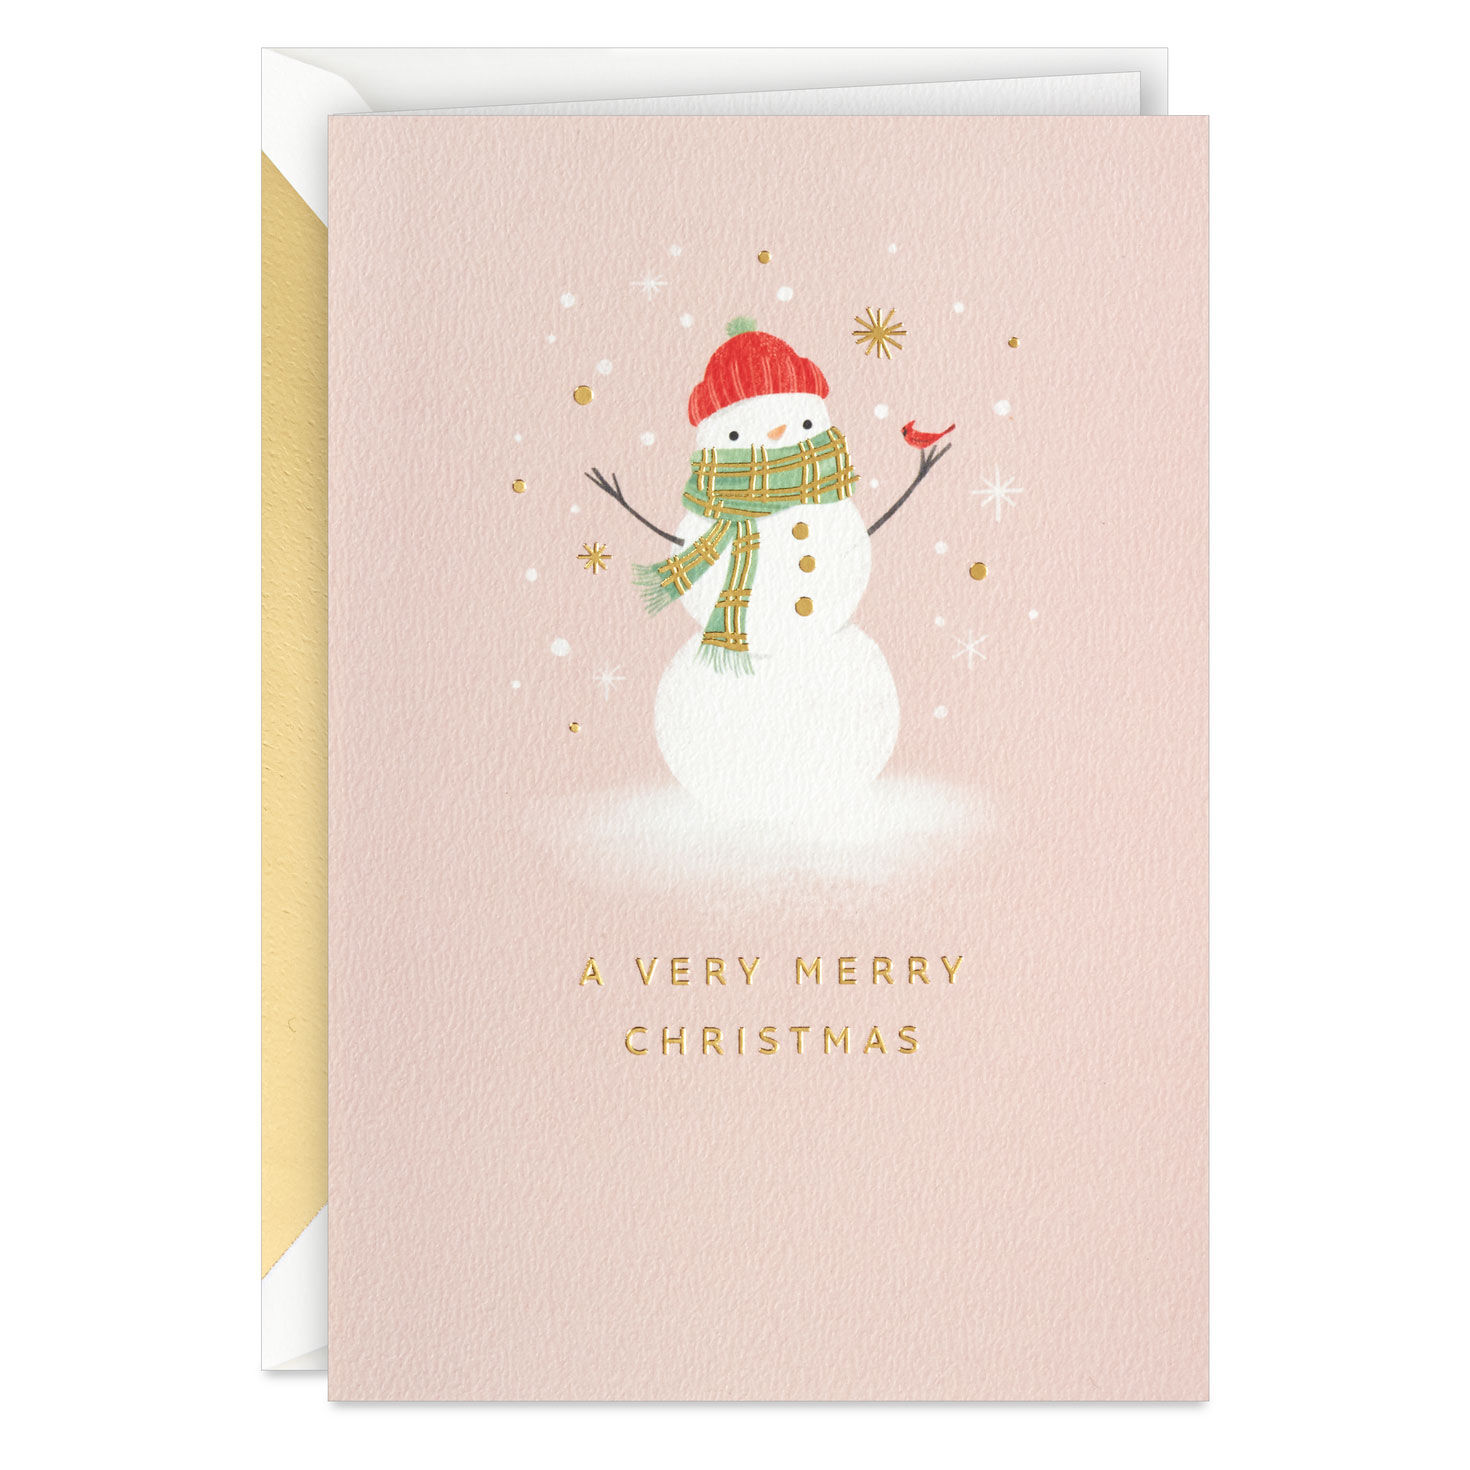 A Very Merry Christmas Snowman and Cardinal Christmas Card for only USD 5.99 | Hallmark